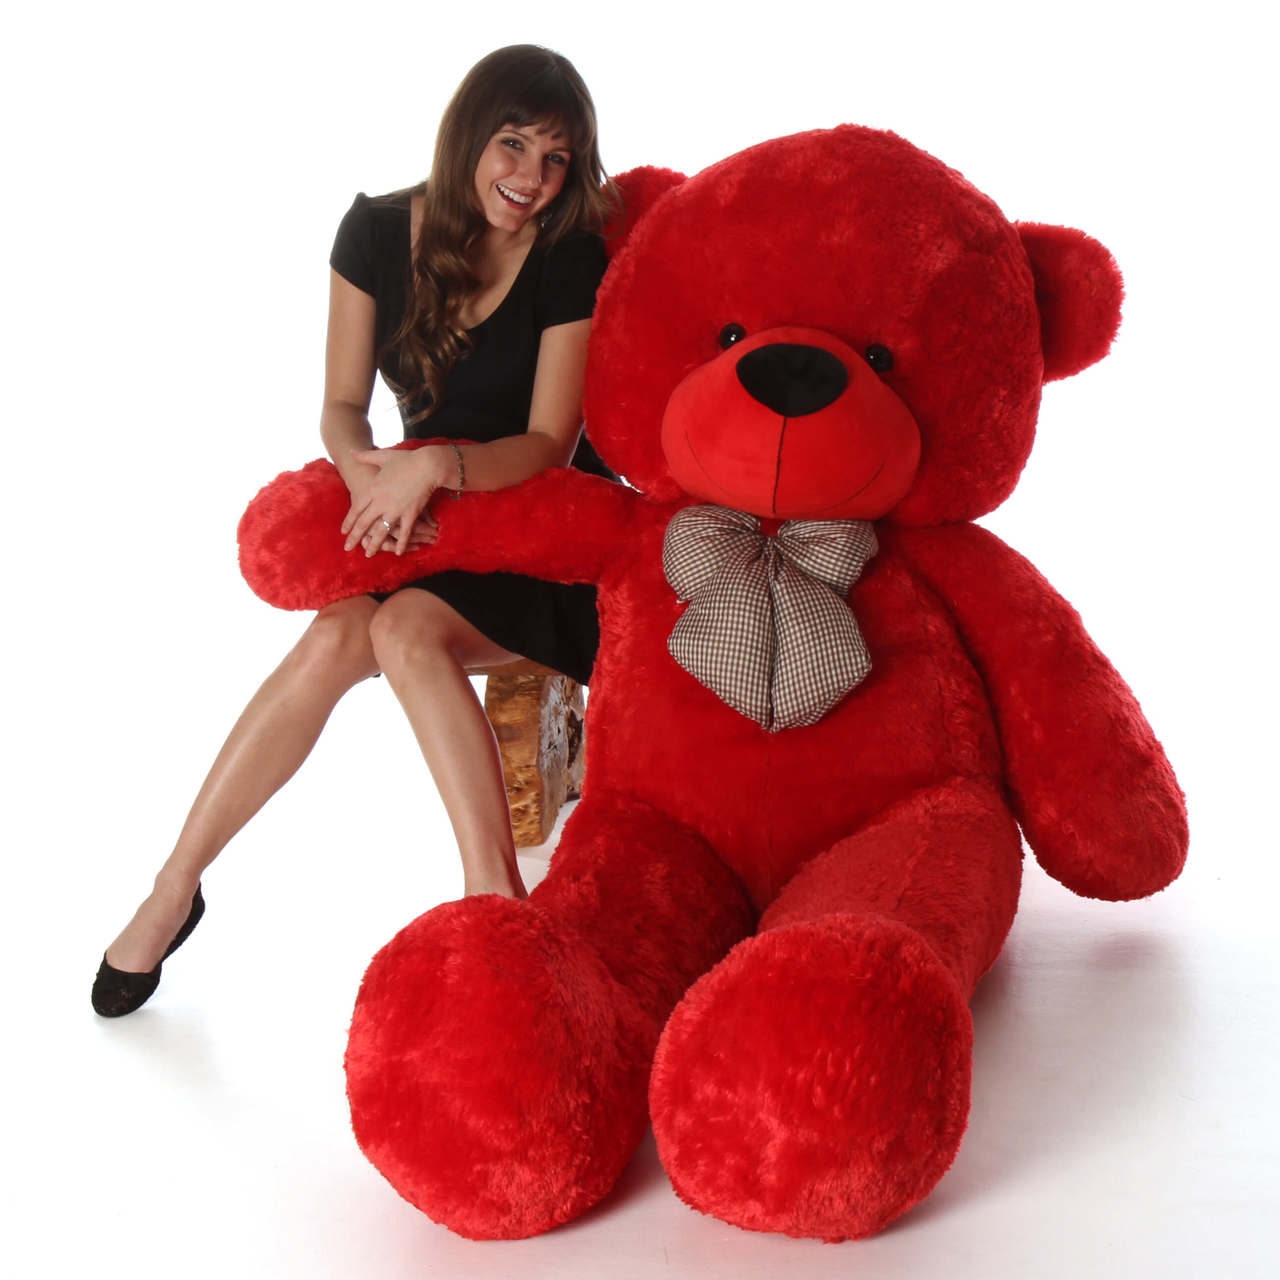 teddy bear giant size